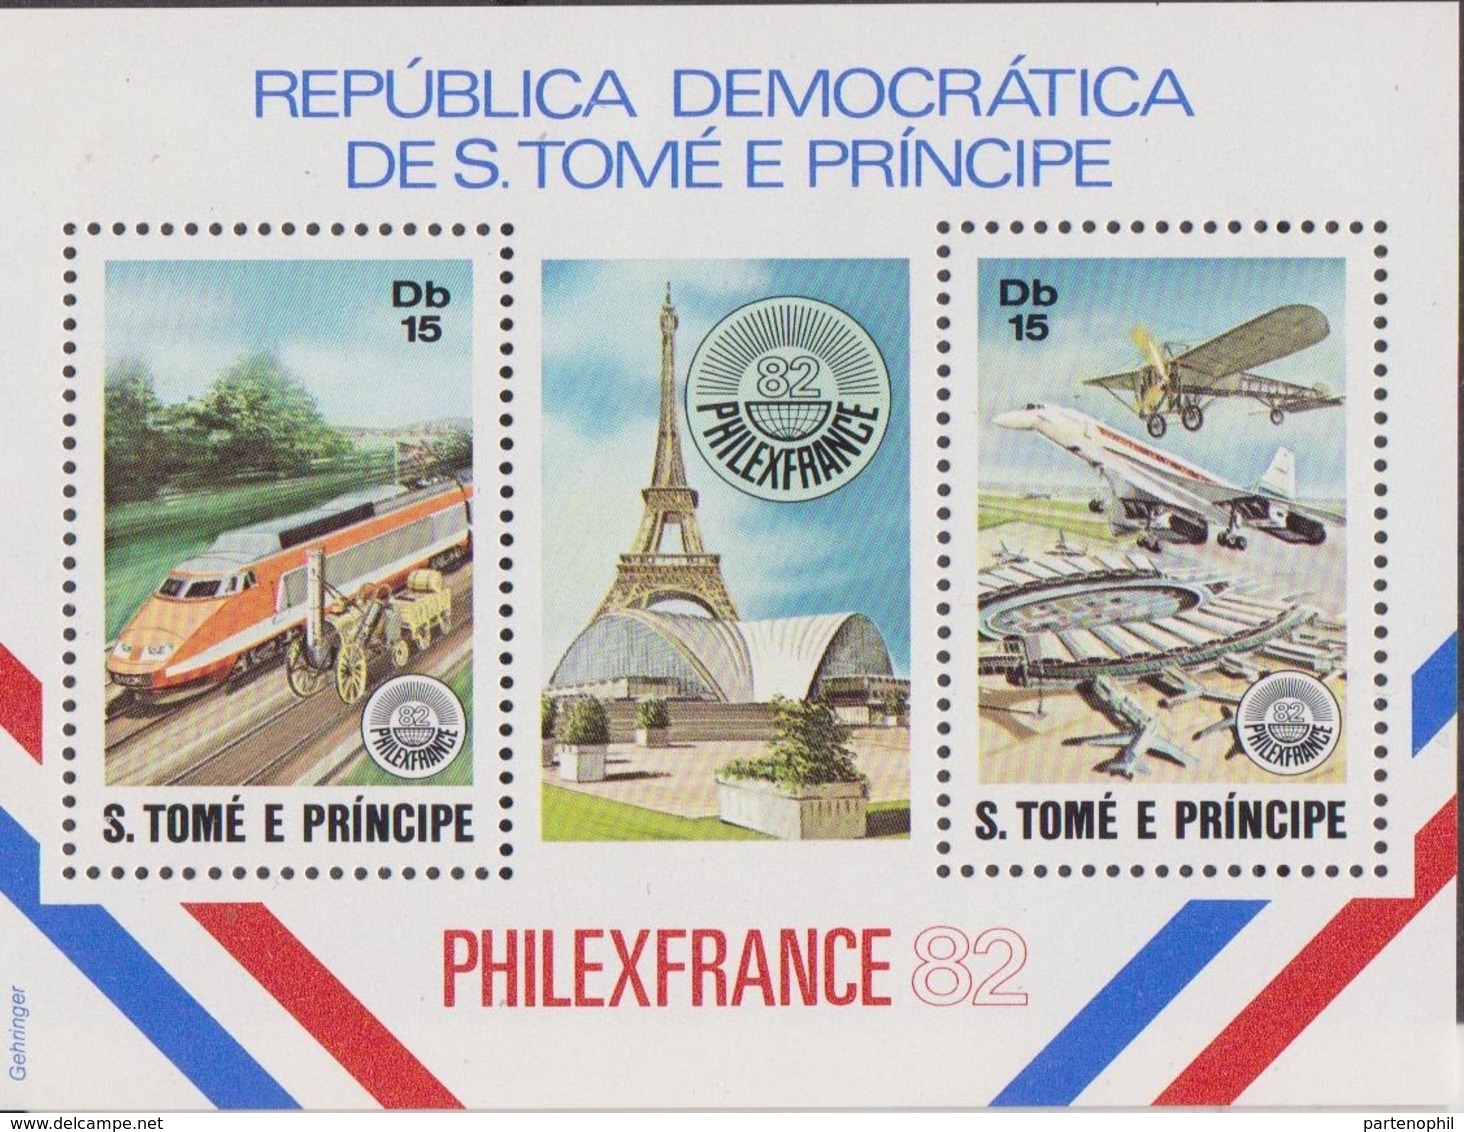 S. Tome E Principe - Philafrance 82' Trein Airplane Set MNH - Esposizioni Filateliche